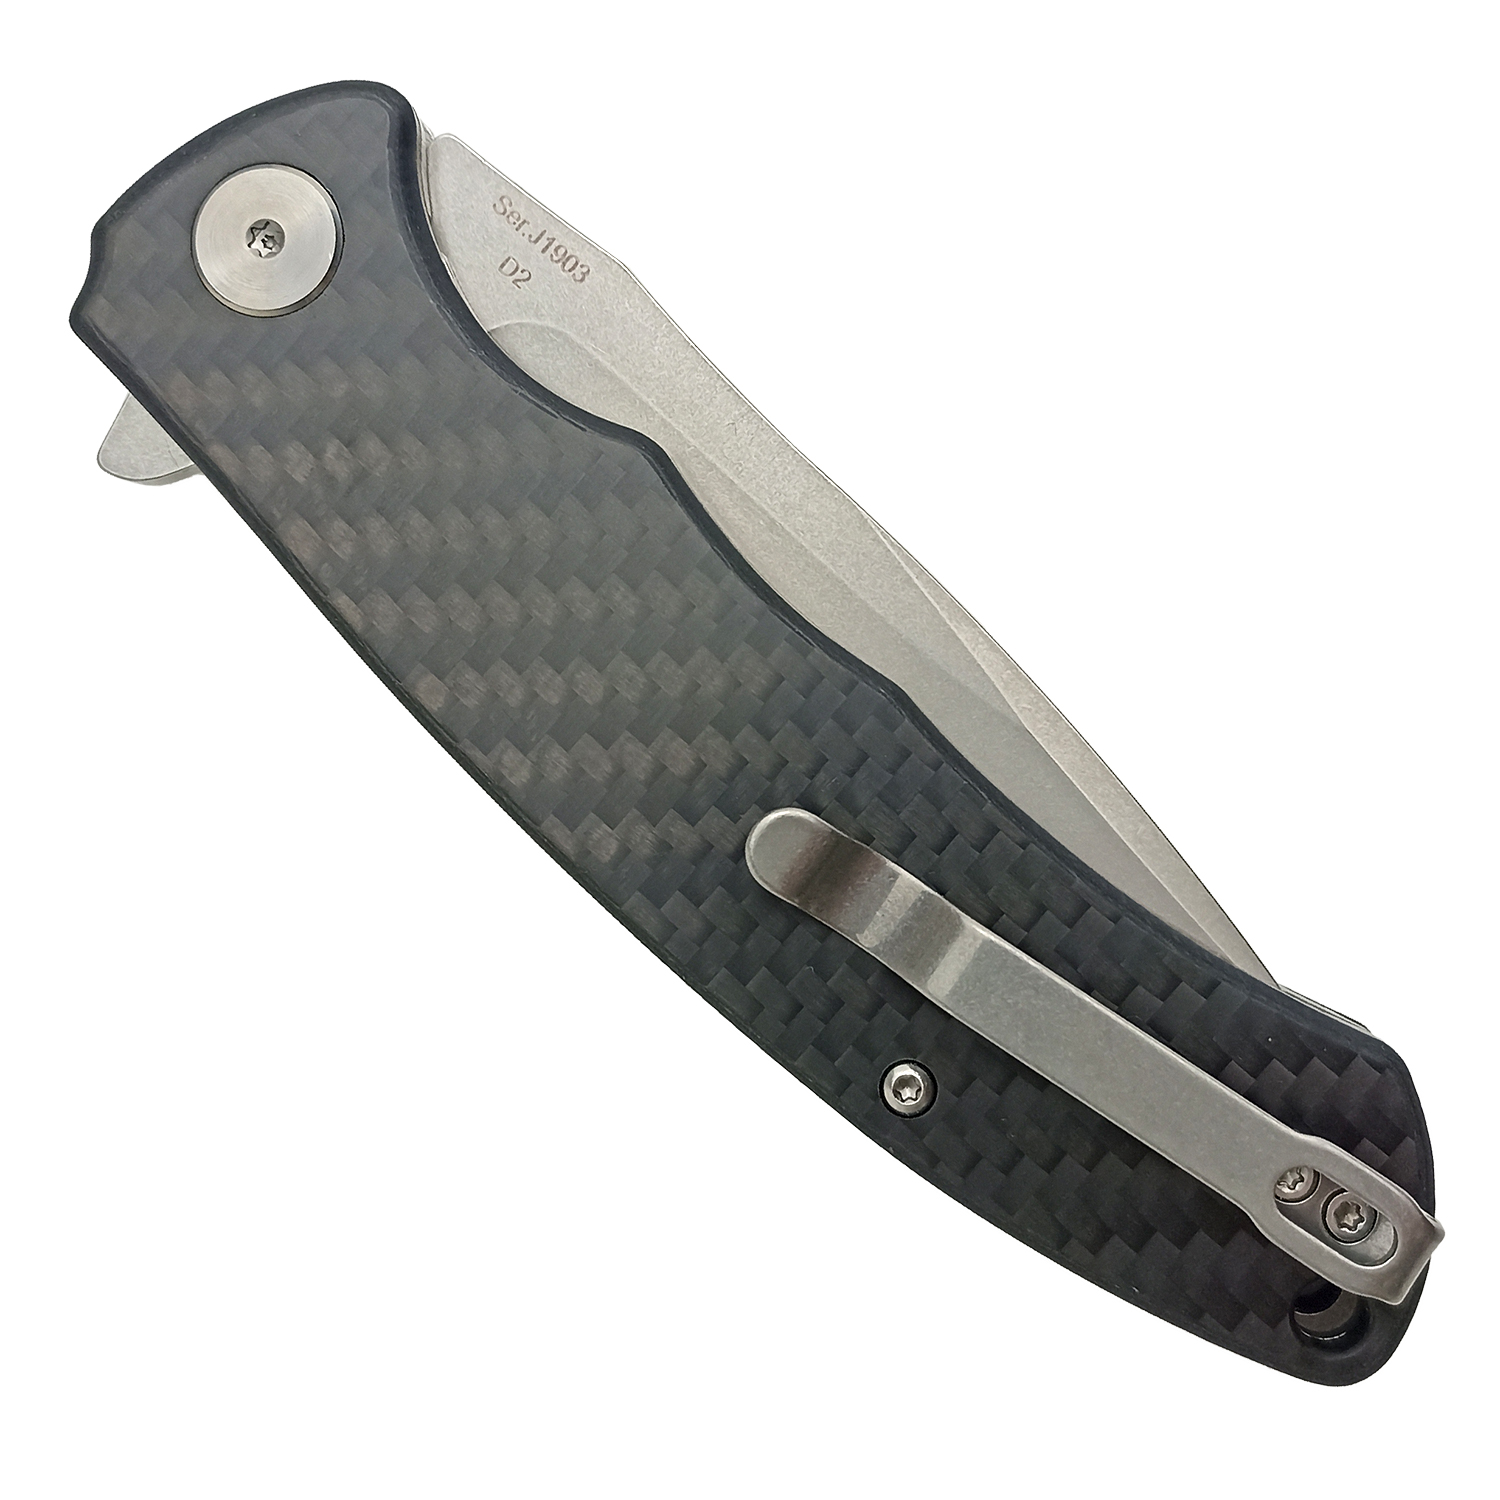 Нож CJRB Taiga J1903-CF, рукоять карбон, AR-RPM9